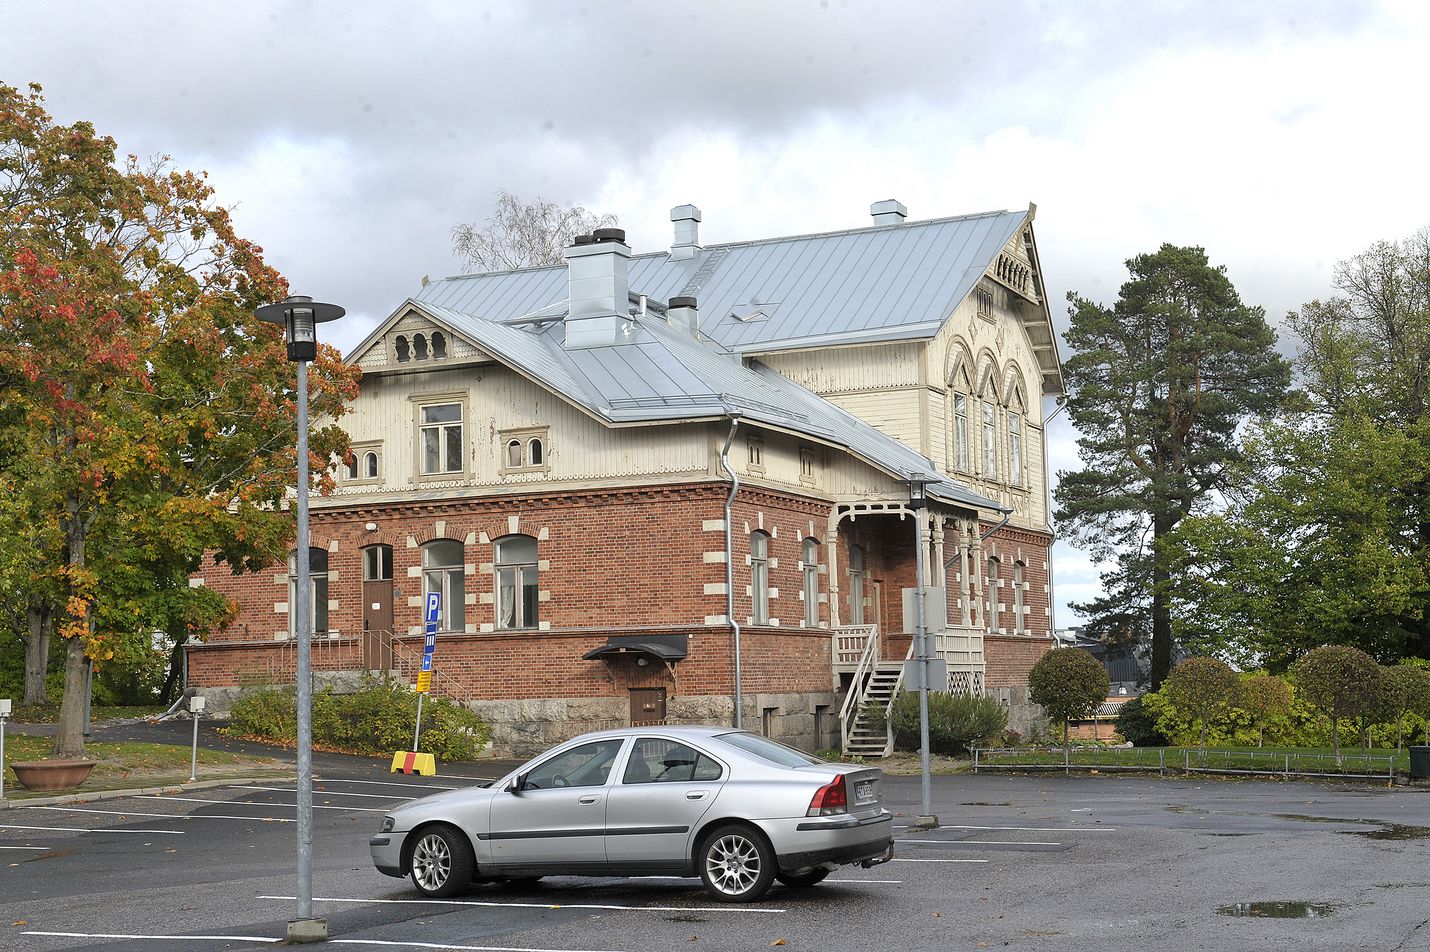 Vanhana johtajan asuntona tunnettu Seminaarinmäen hallintorakennus vuodelta 1898 on mahdollista jatkossa ottaa asuinkäyttöön. Kaupunki on ostamassa tätä ja kahta muuta rakennusta Seminaarinmäeltä.